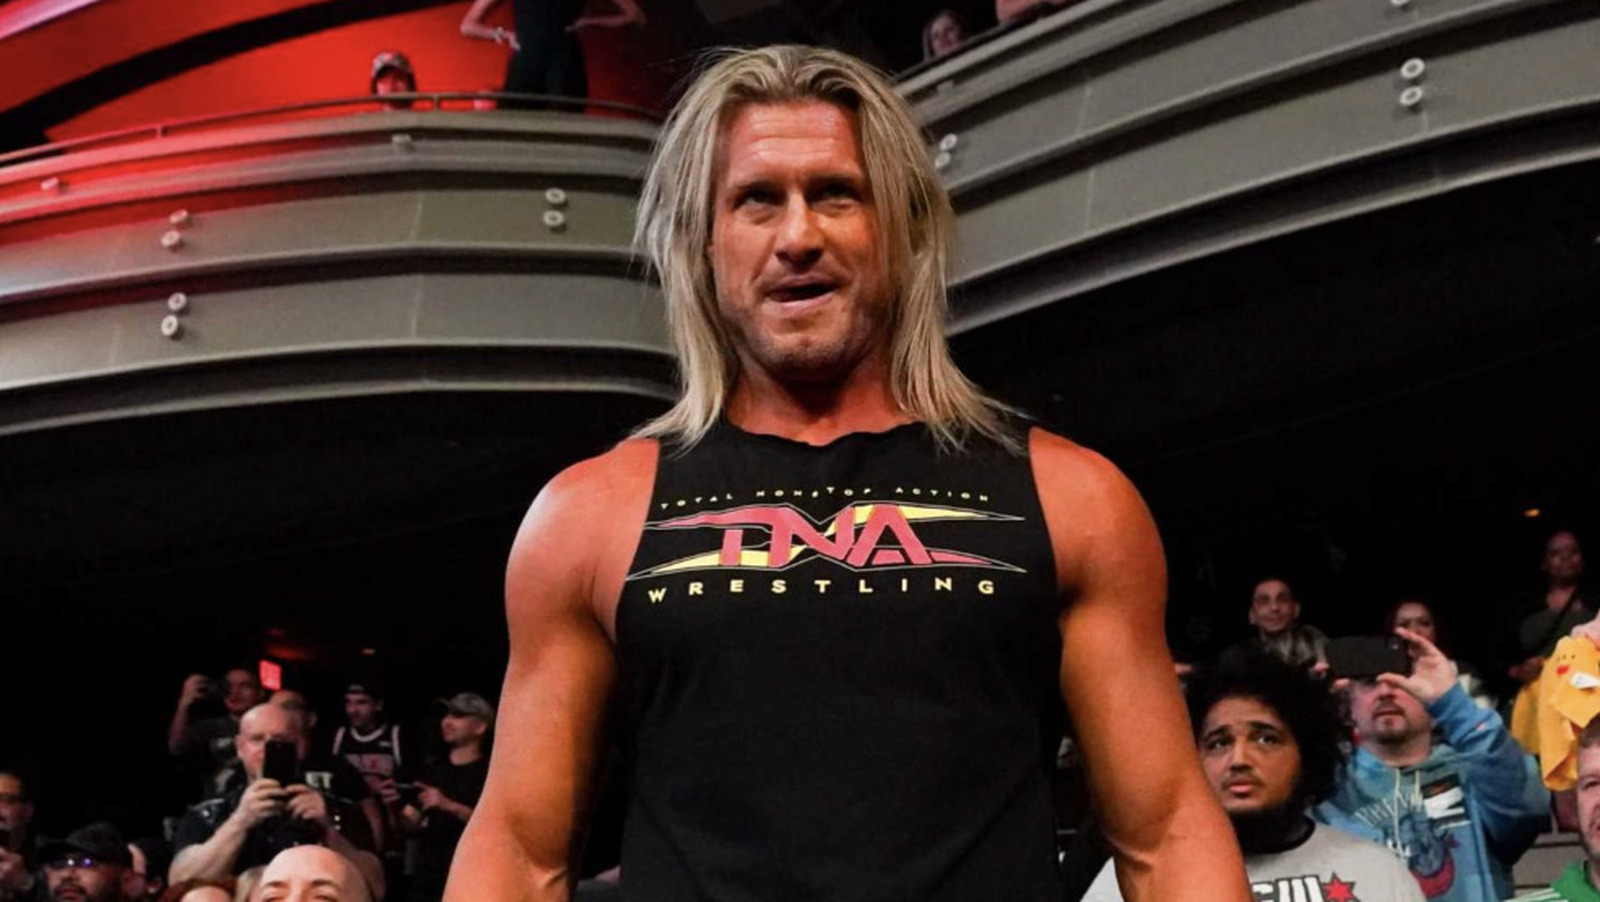 El debut en TNA de la ex estrella de la WWE Dolph Ziggler atrae más de un millón de visitas en YouTube